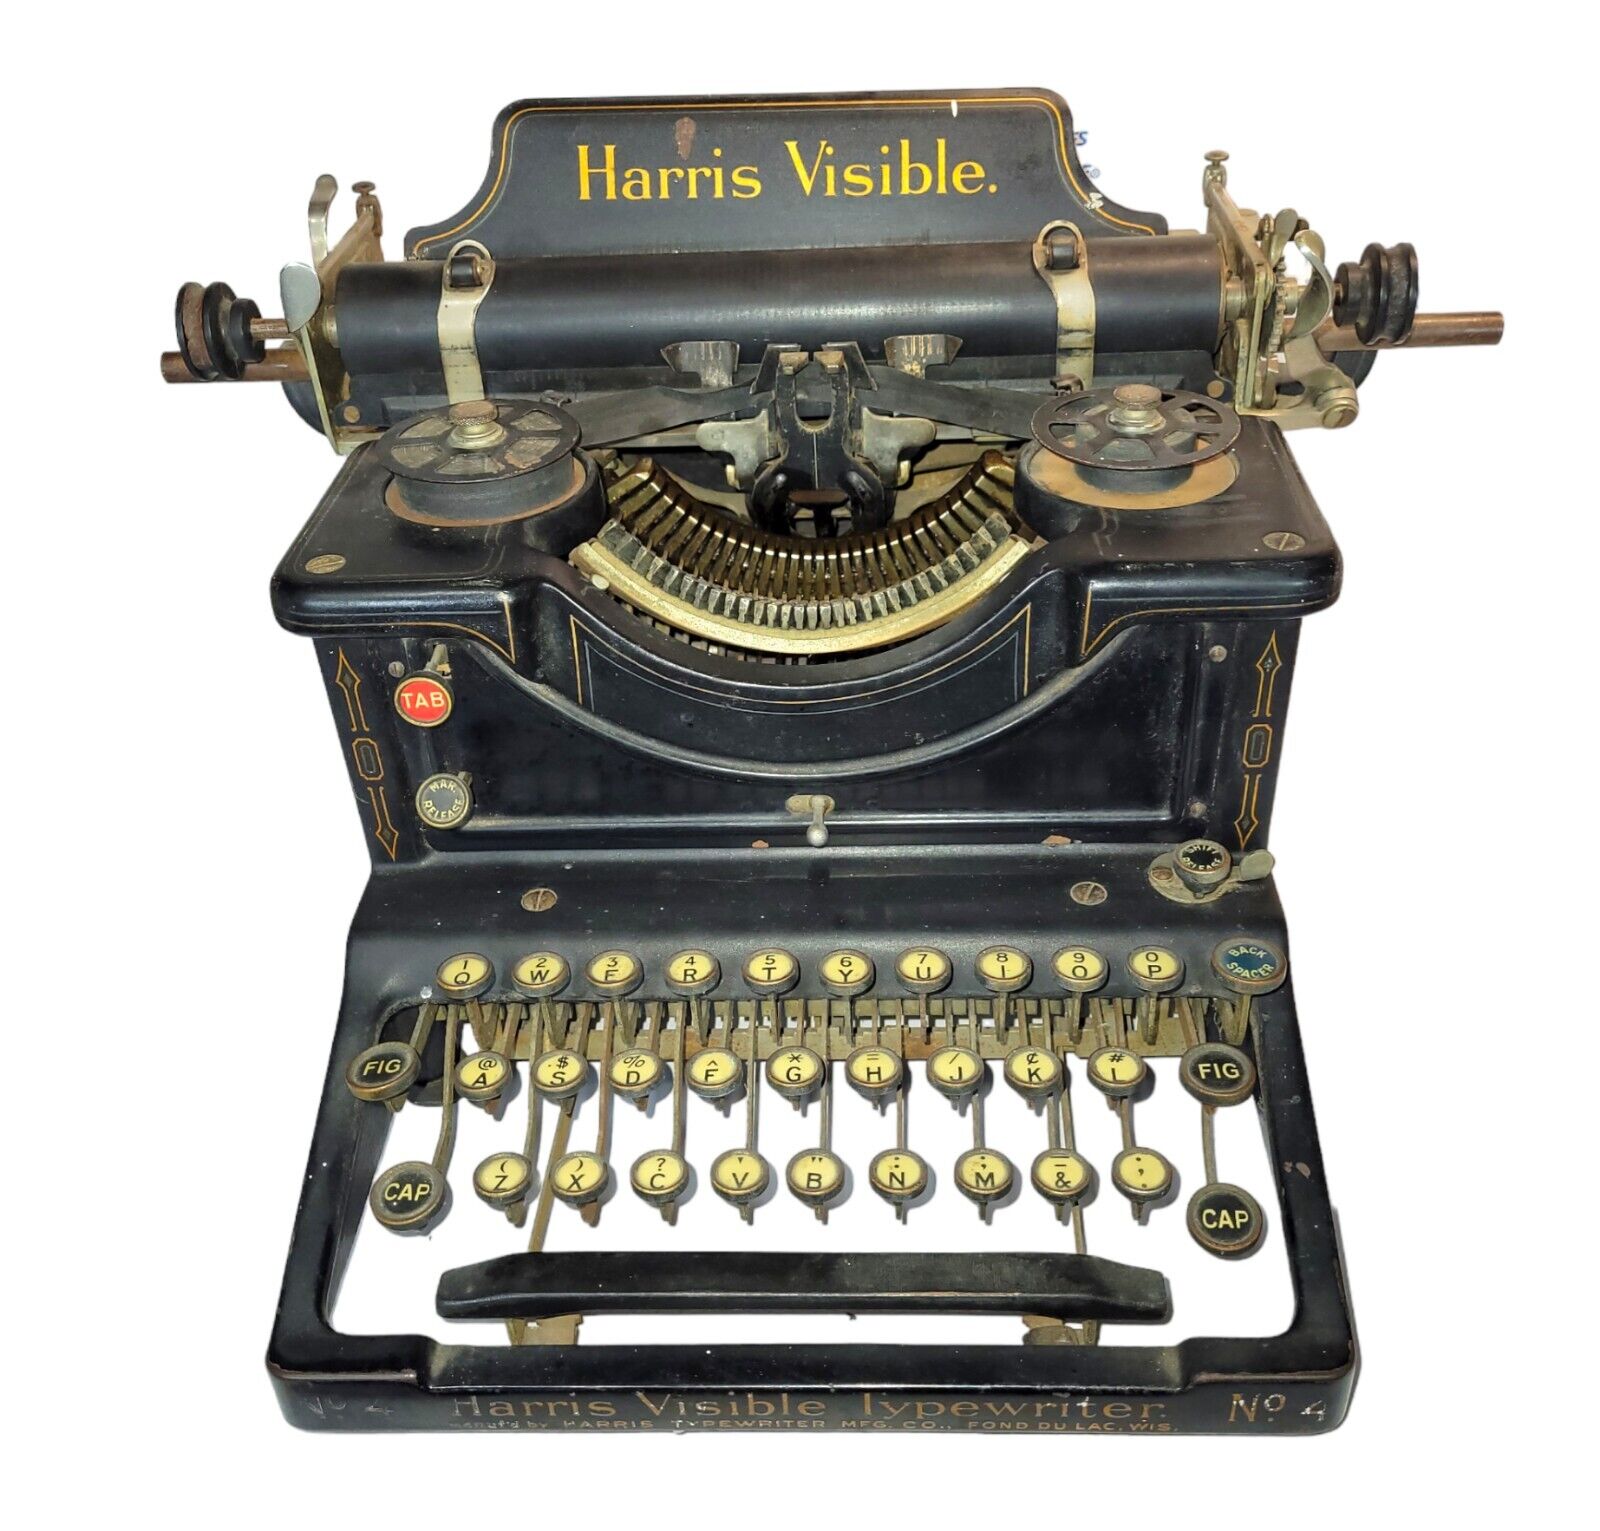 1912 Antique Harris Visible No. 4 Typewriter, RARE